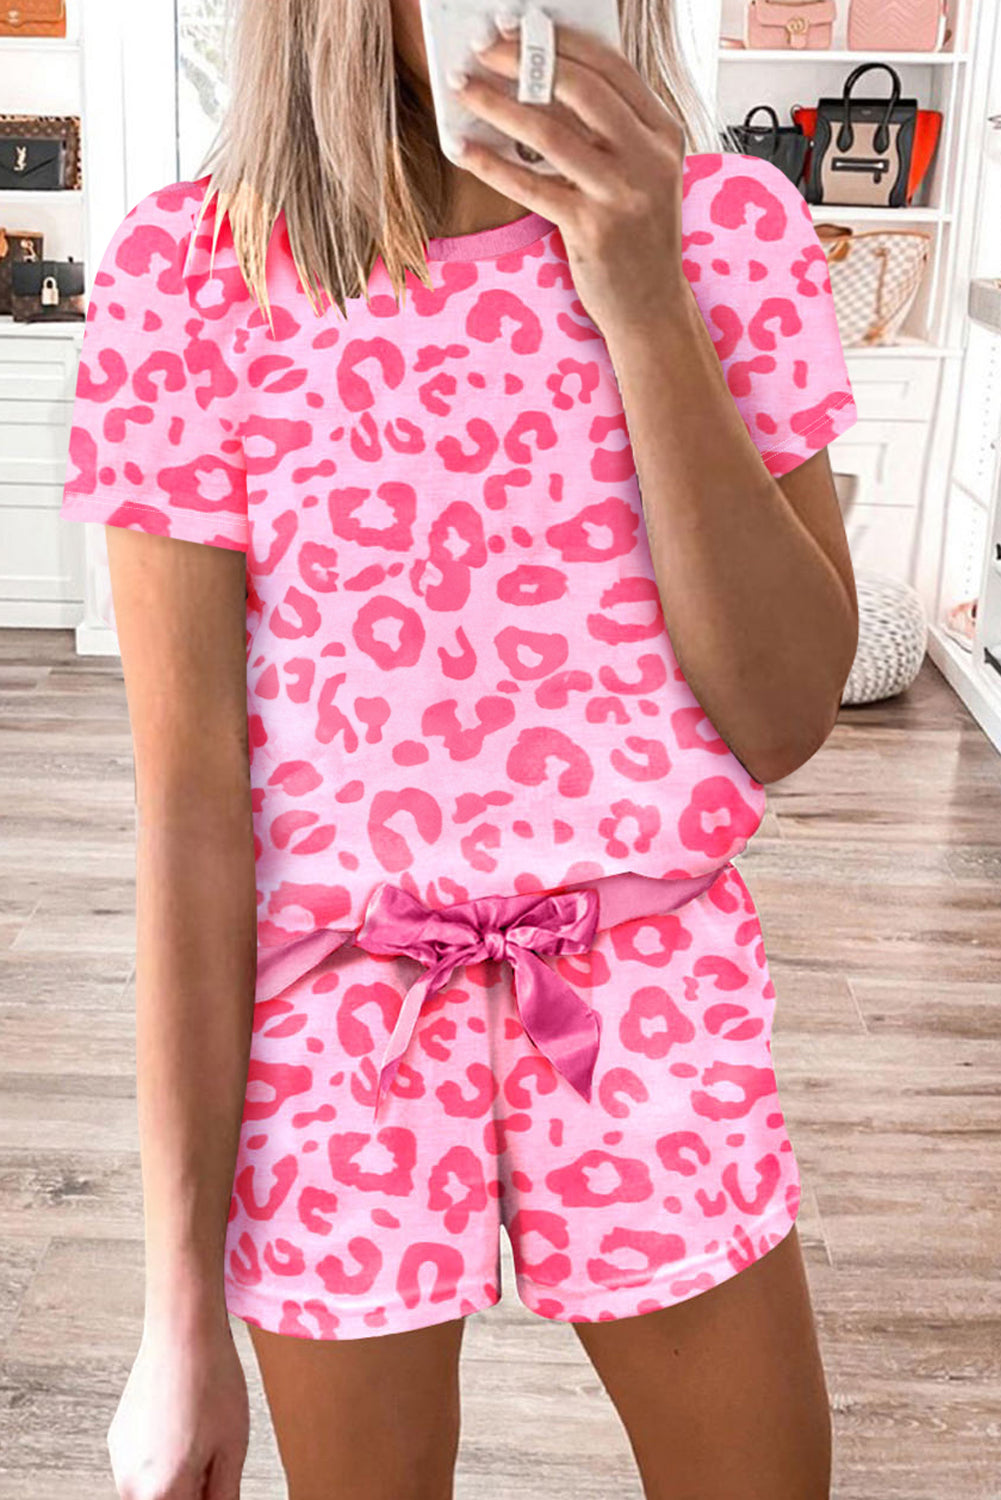 Pink Leopard Print Drawstring Shorts Loungewear Set